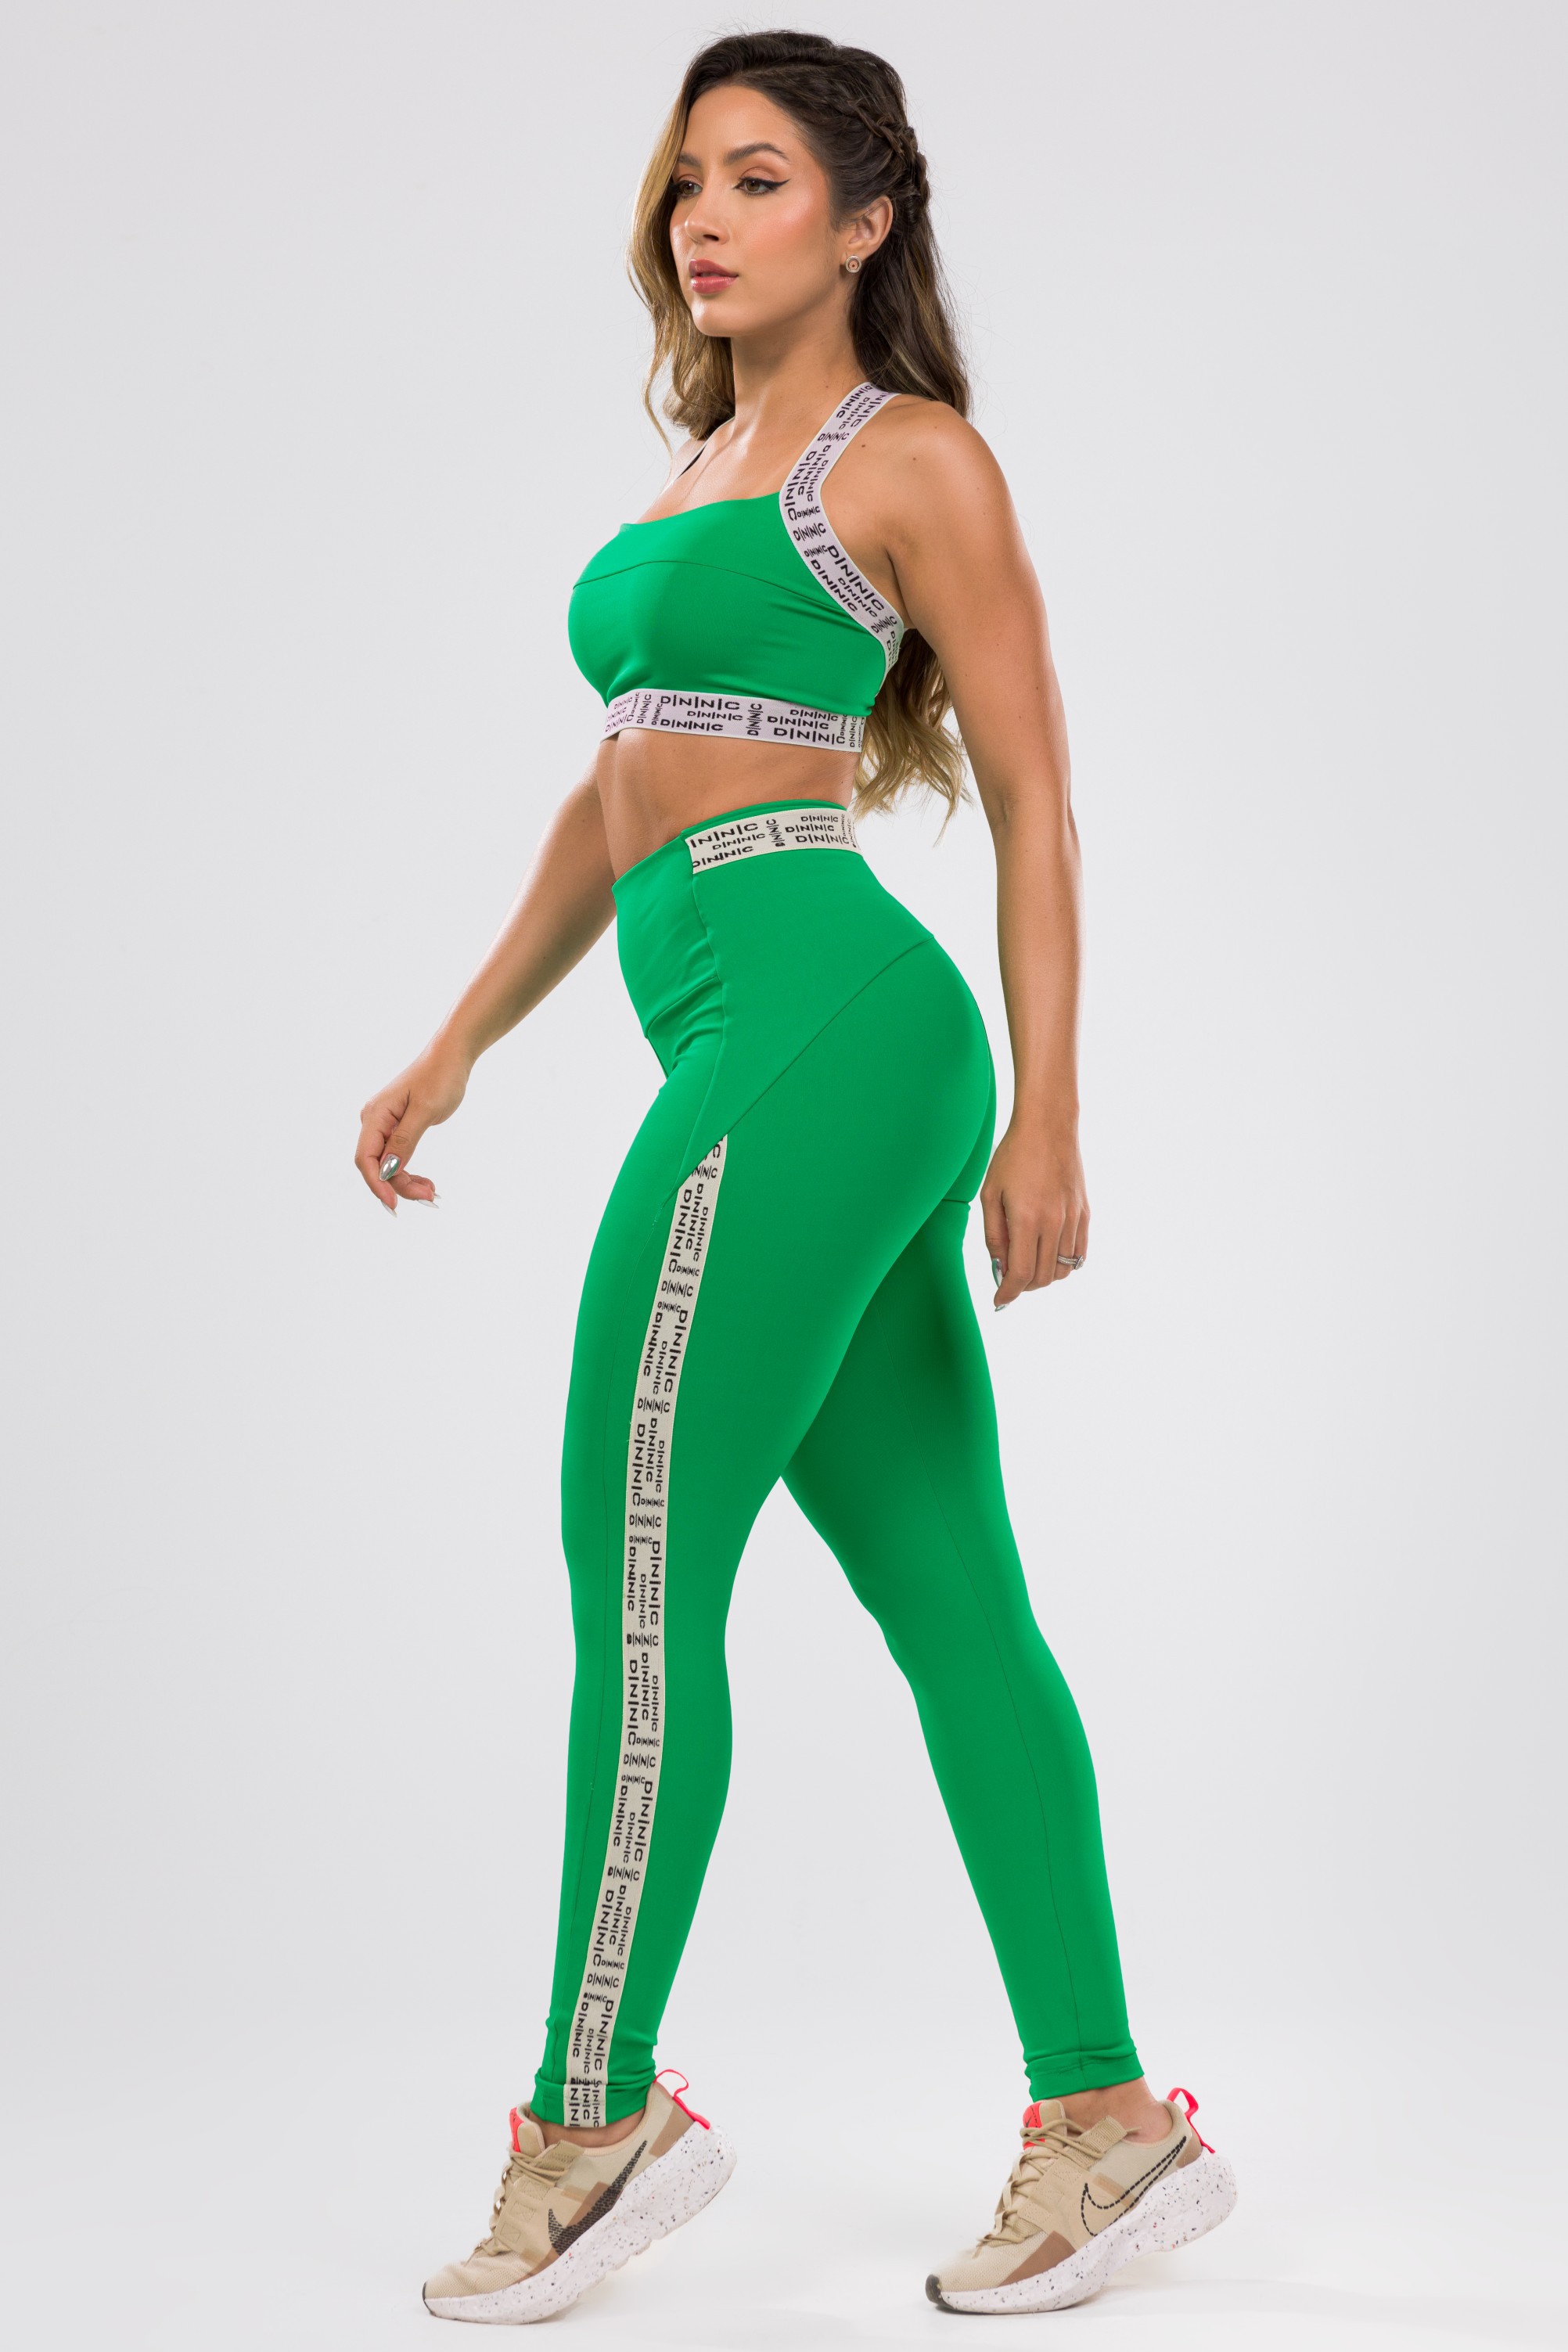 Legging Adventure Verde em Suplex Poliamida - Donna Carioca Moda Fitness